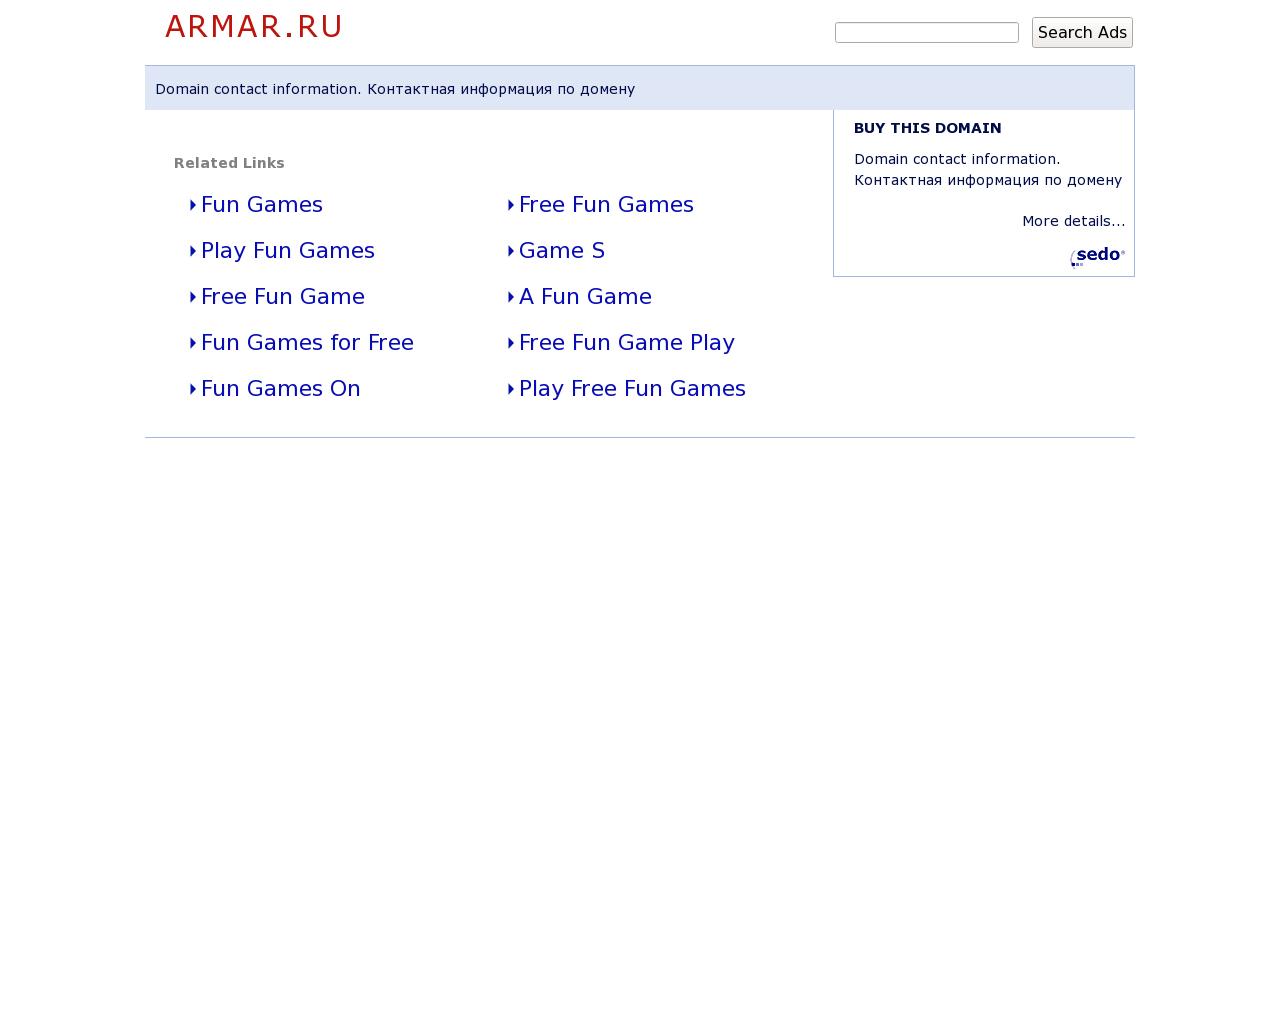 Изображение сайта armar.ru в разрешении 1280x1024